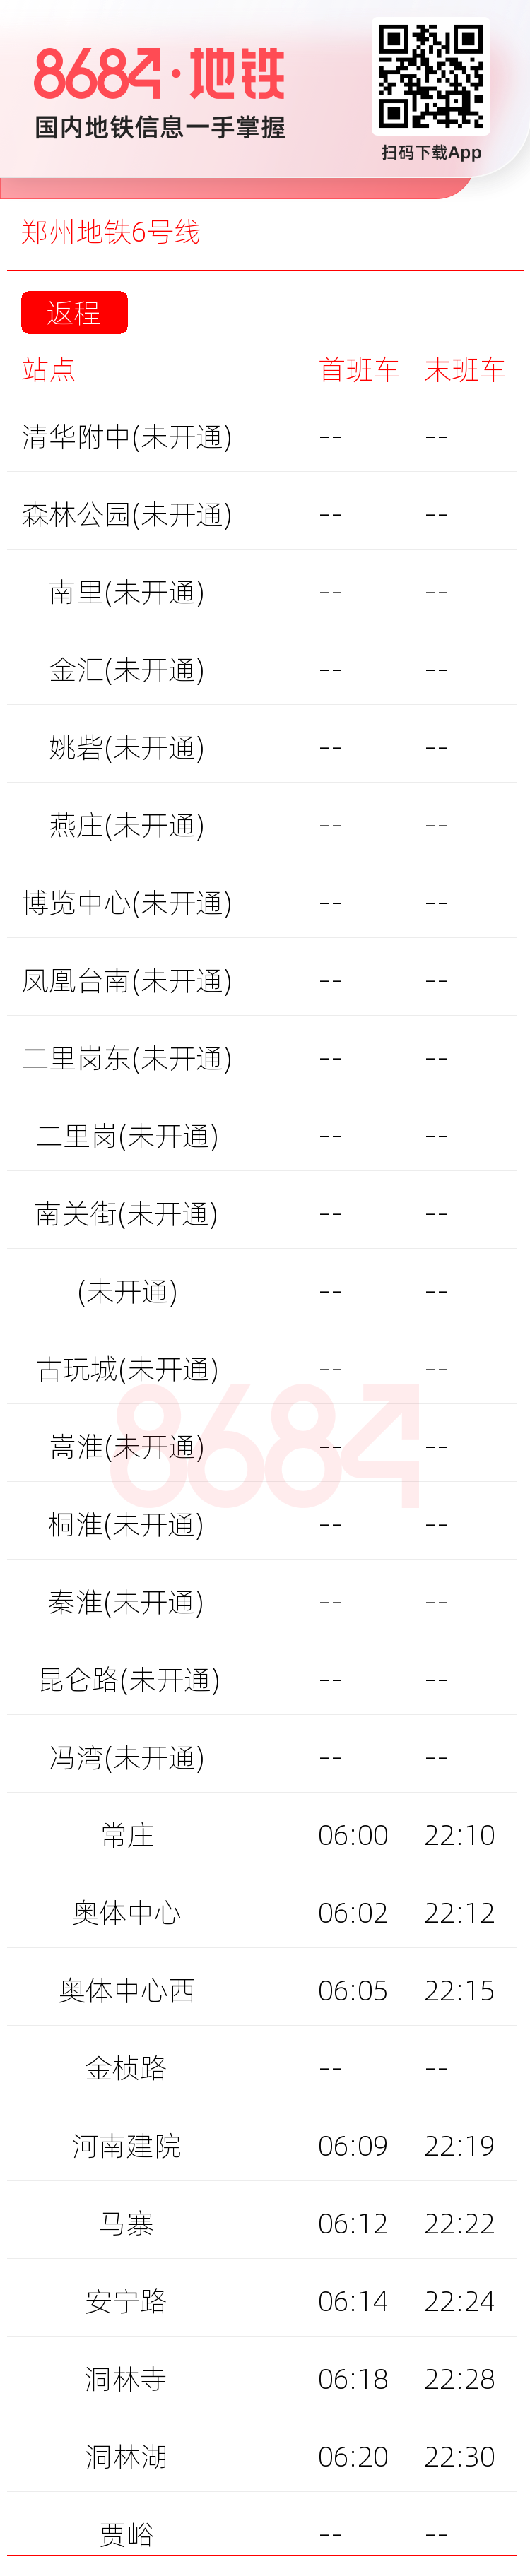 郑州地铁6号线运营时间表